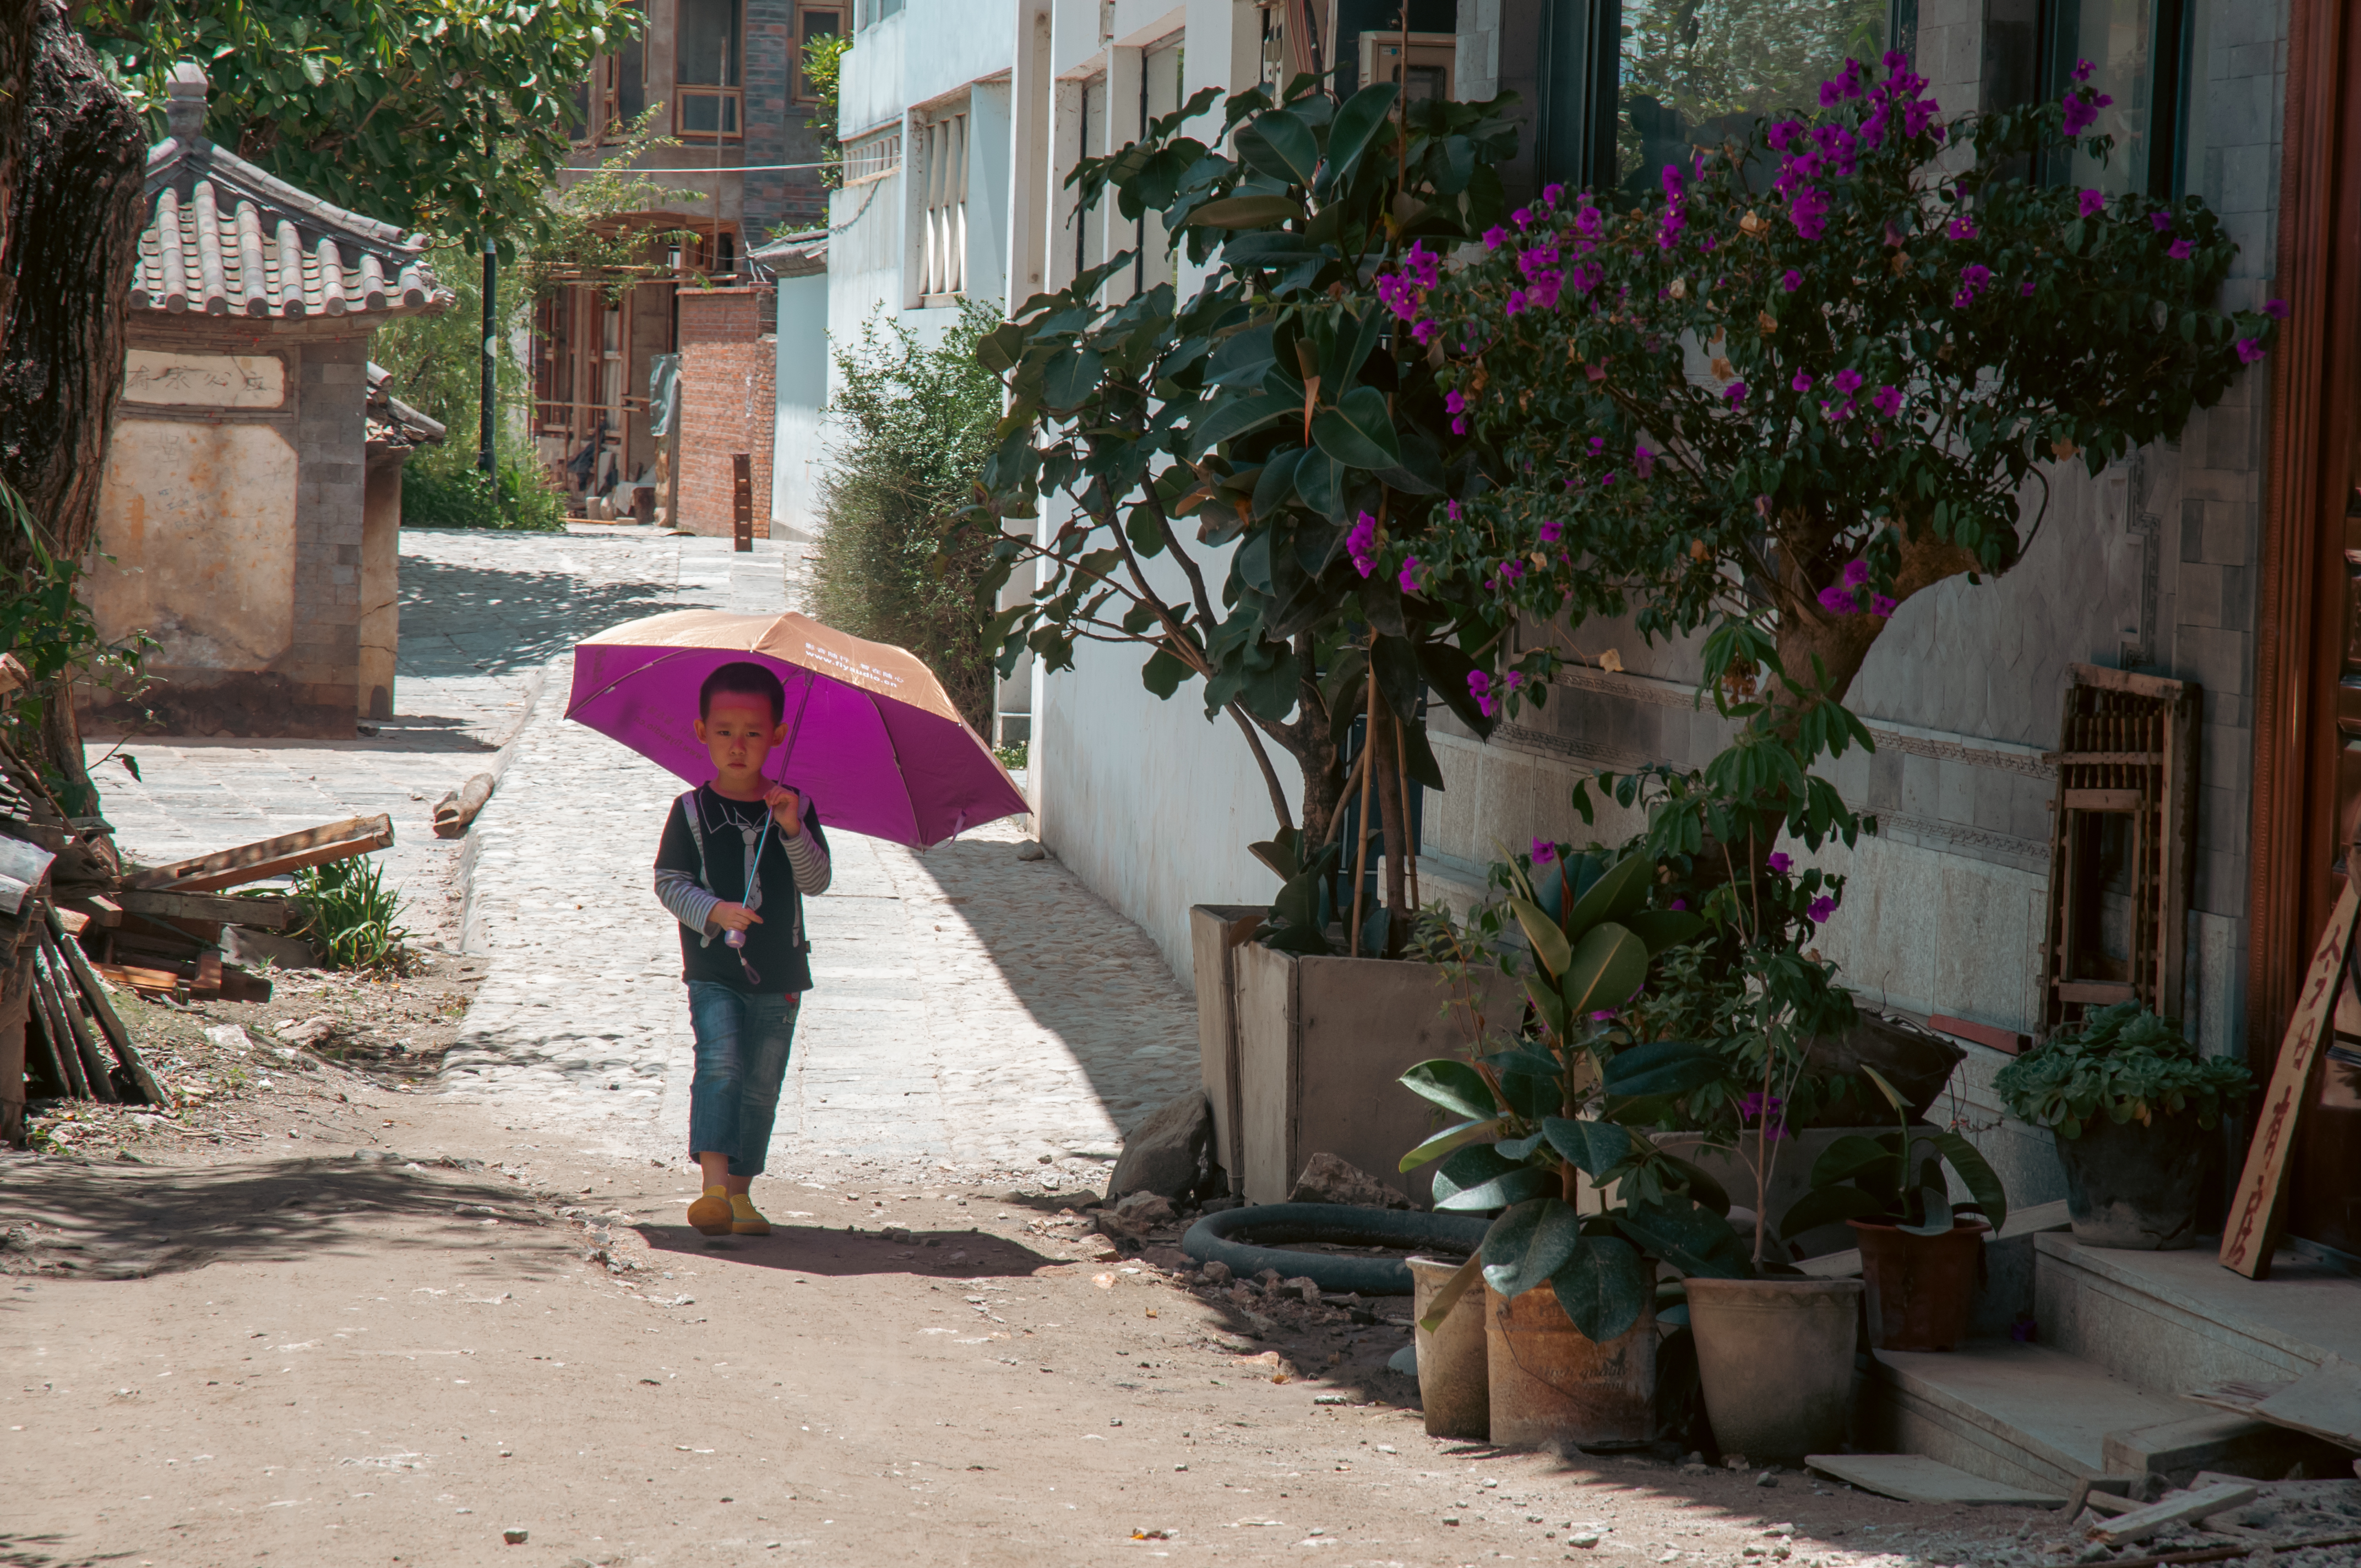 a boy holding an umbrella on a street